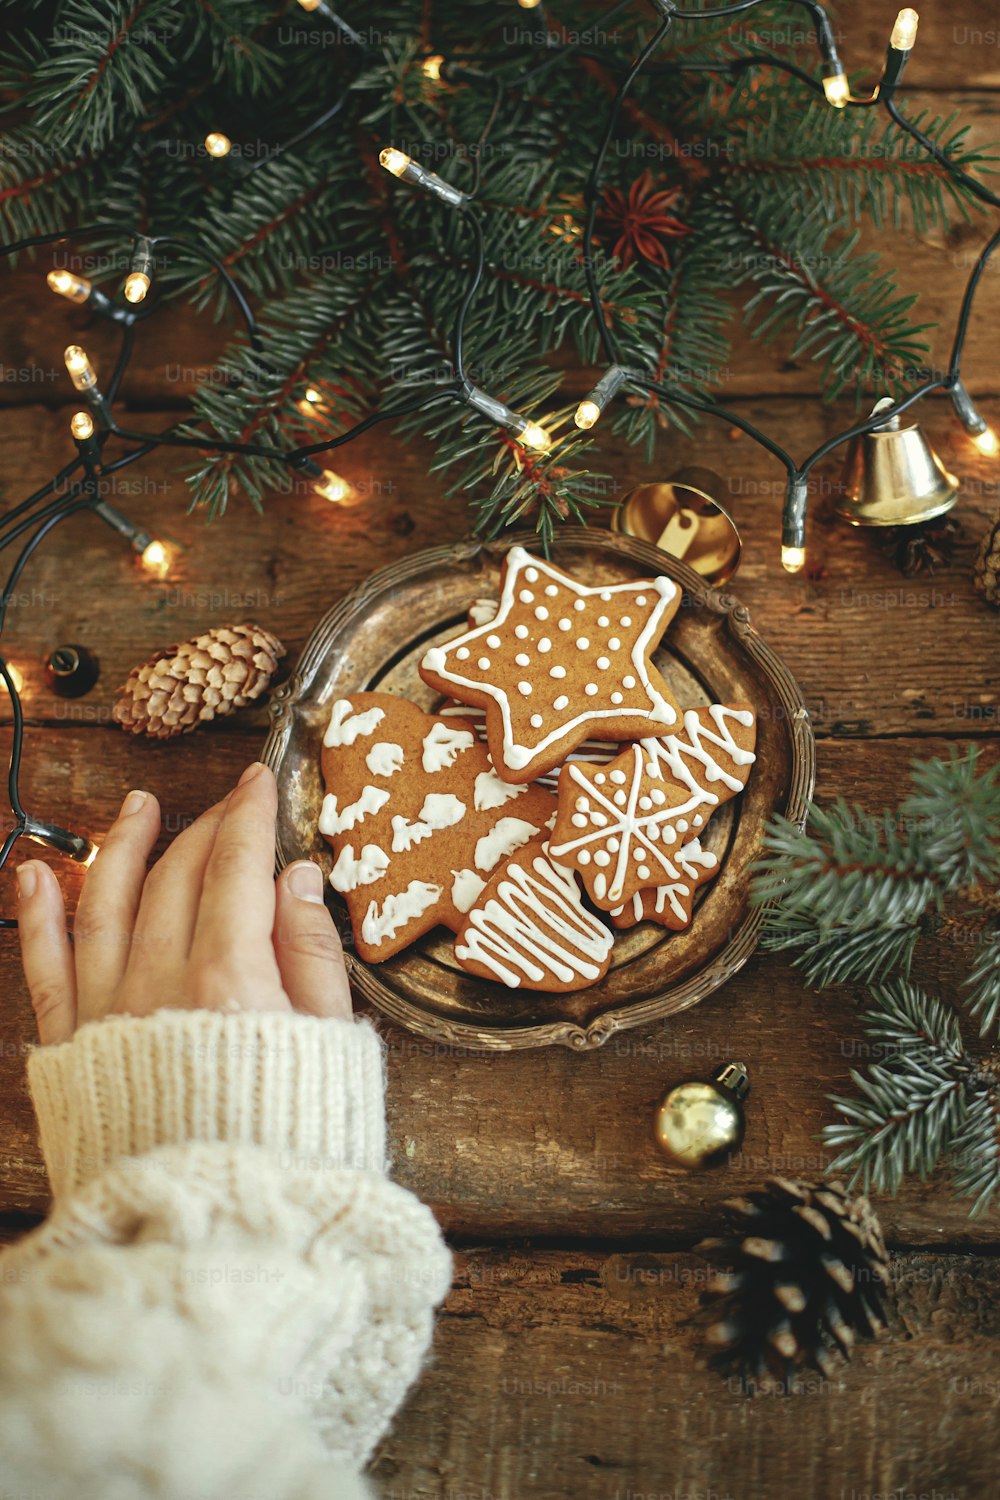 Plato de mano con galletas de jengibre navideñas, ramas de abeto, luces cálidas sobre mesa de madera rústica, plano. Imagen atmosférica invernal. Saludos de temporada. Deliciosas galletas caseras